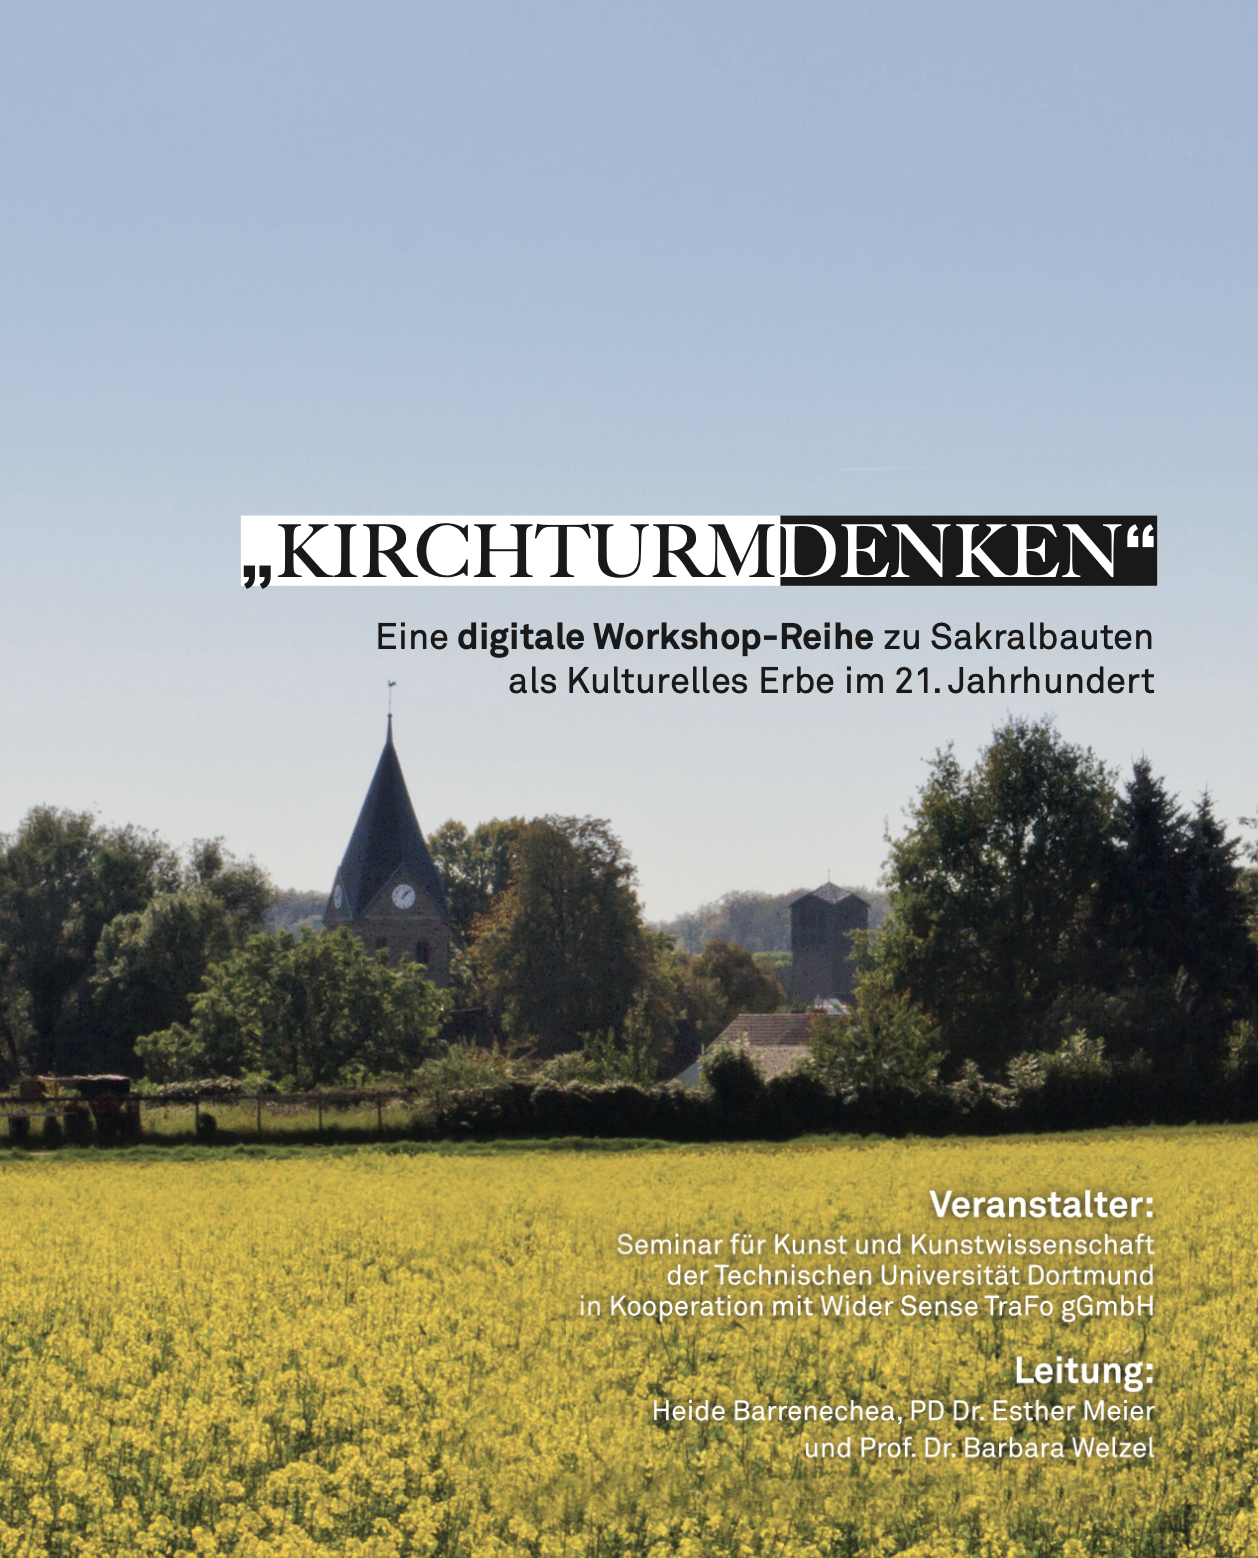 Bild einer Landschaft mit Kirchturm und dem Titel